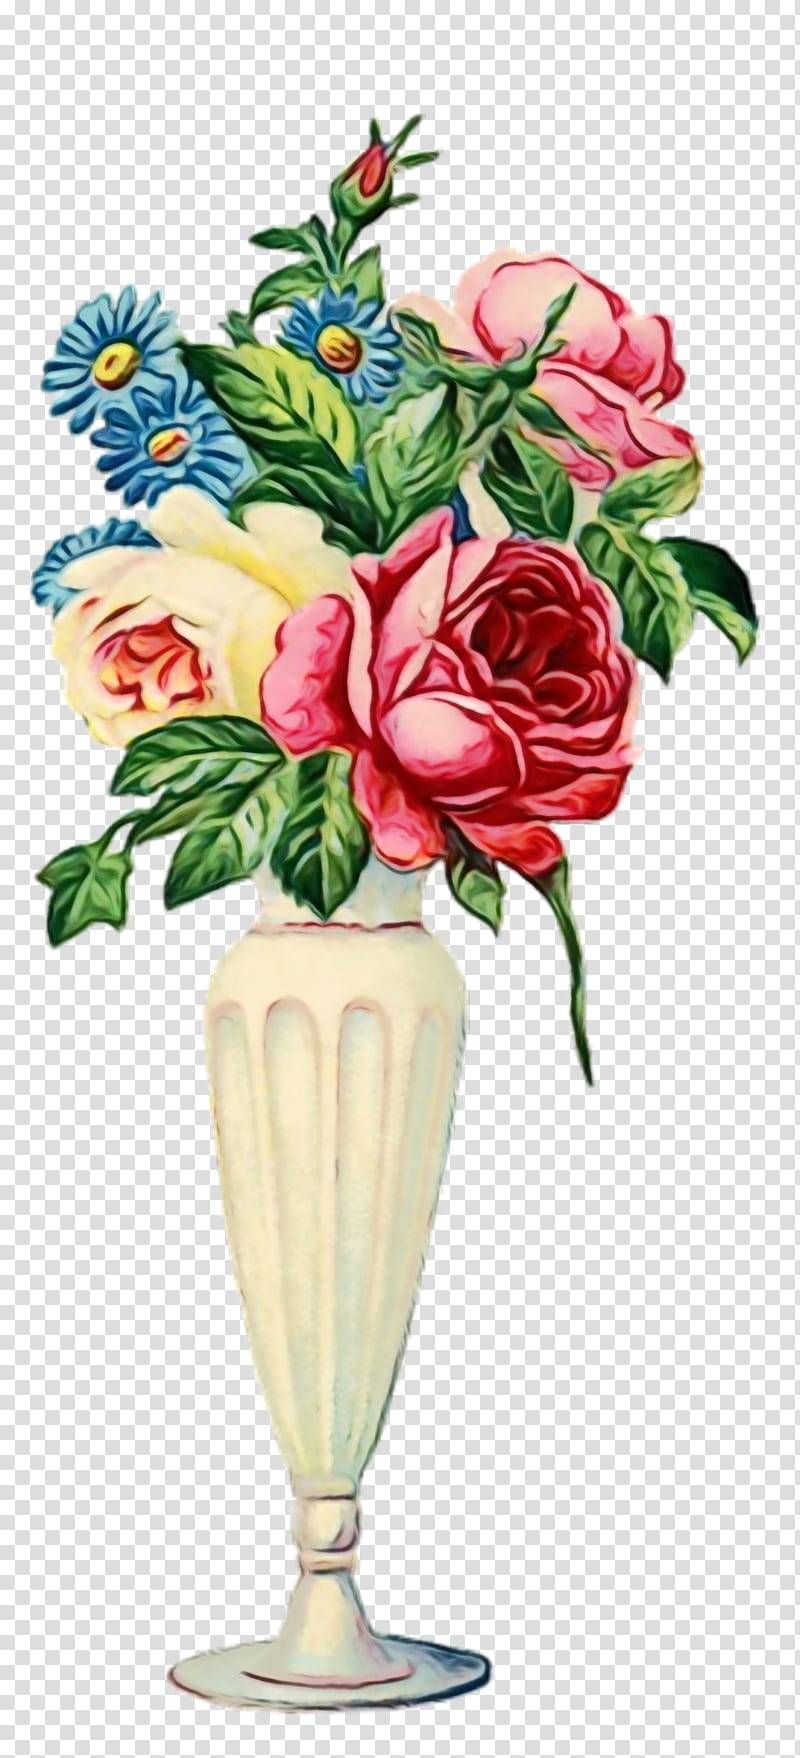 Pink Flower, Vase, Antique, Flower Vases, Floral Design, Rose, Flower Bouquet, Vintage Clothing transparent background PNG clipart